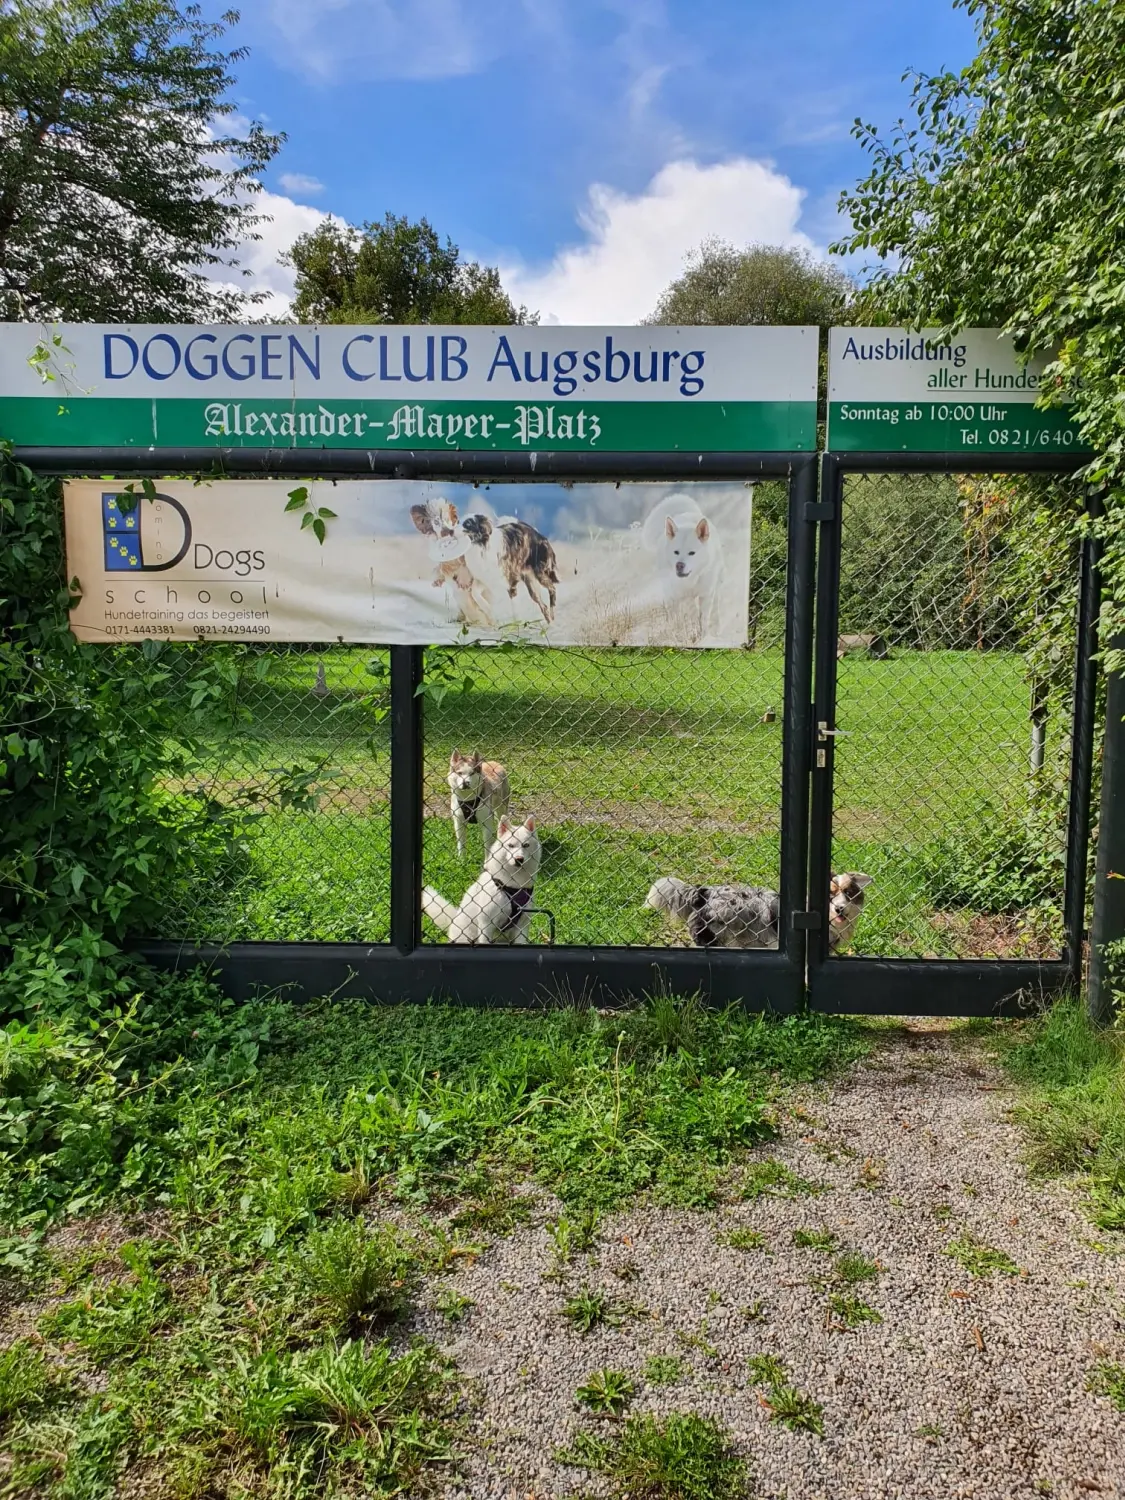 Domino Dogs School, Das Tor des Hundeclubs war verschlossen und die Hunde drinnen